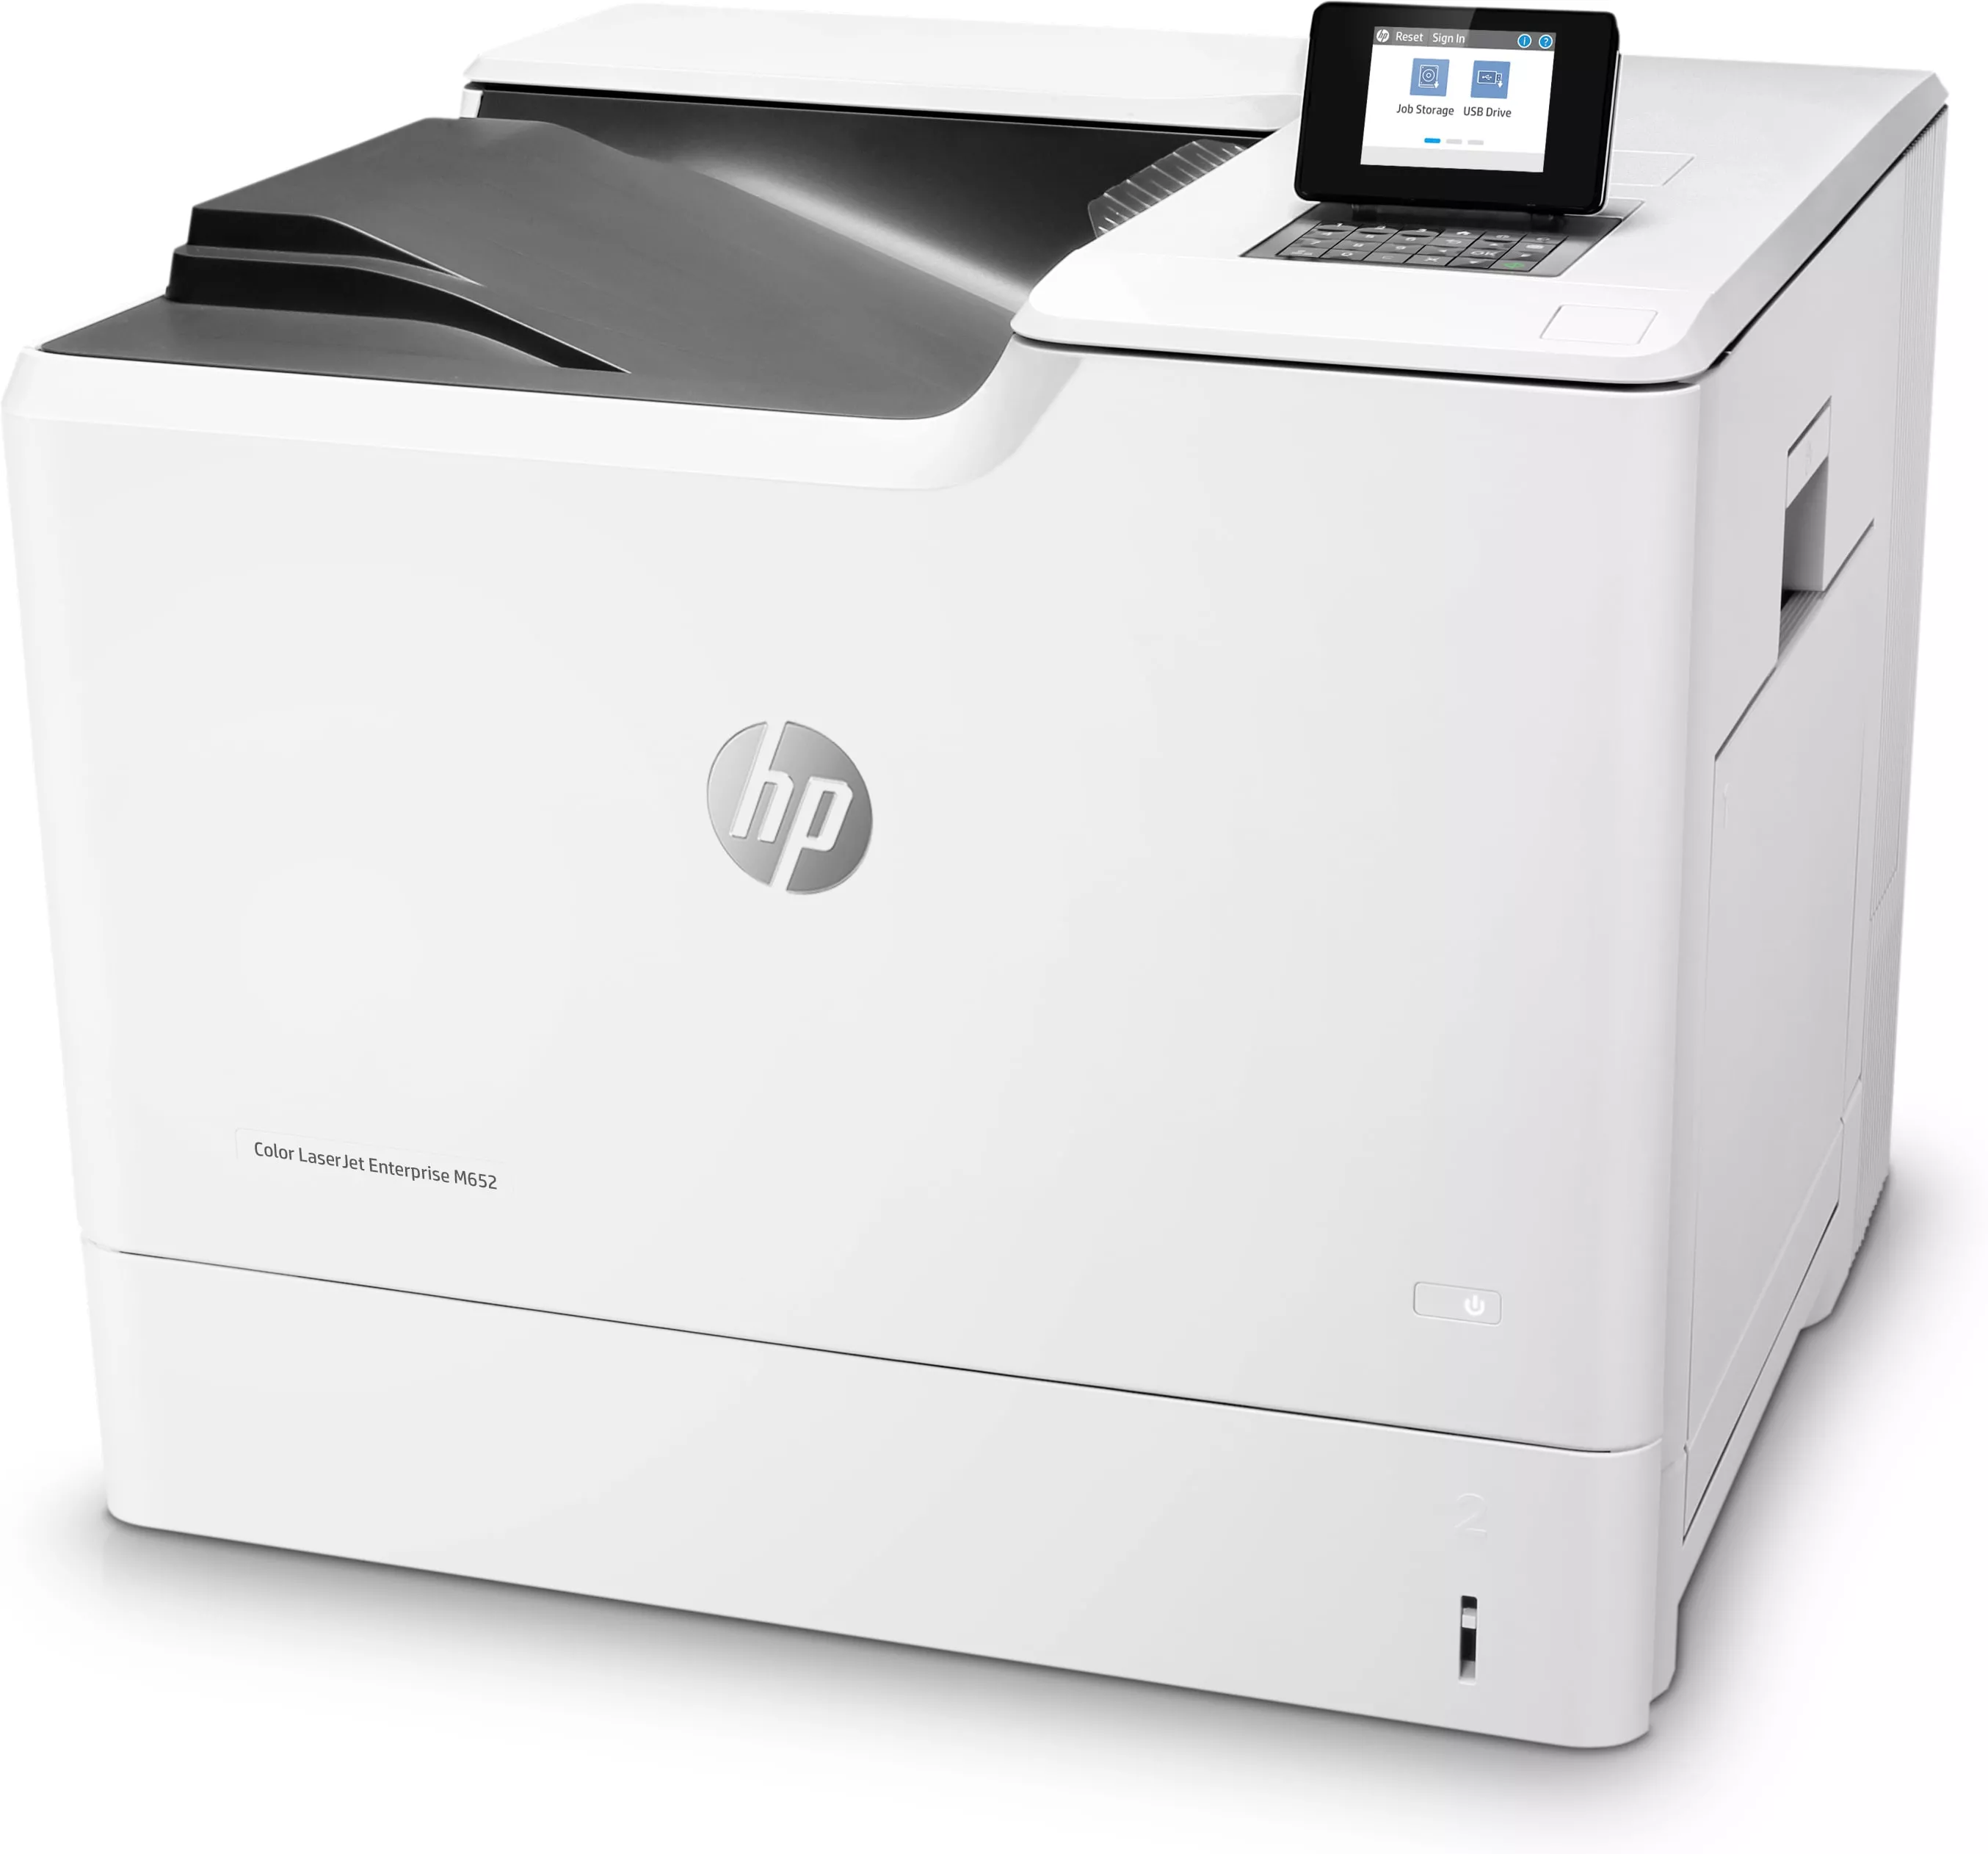 Vente HP Color LaserJet Enterprise M652n HP au meilleur prix - visuel 2